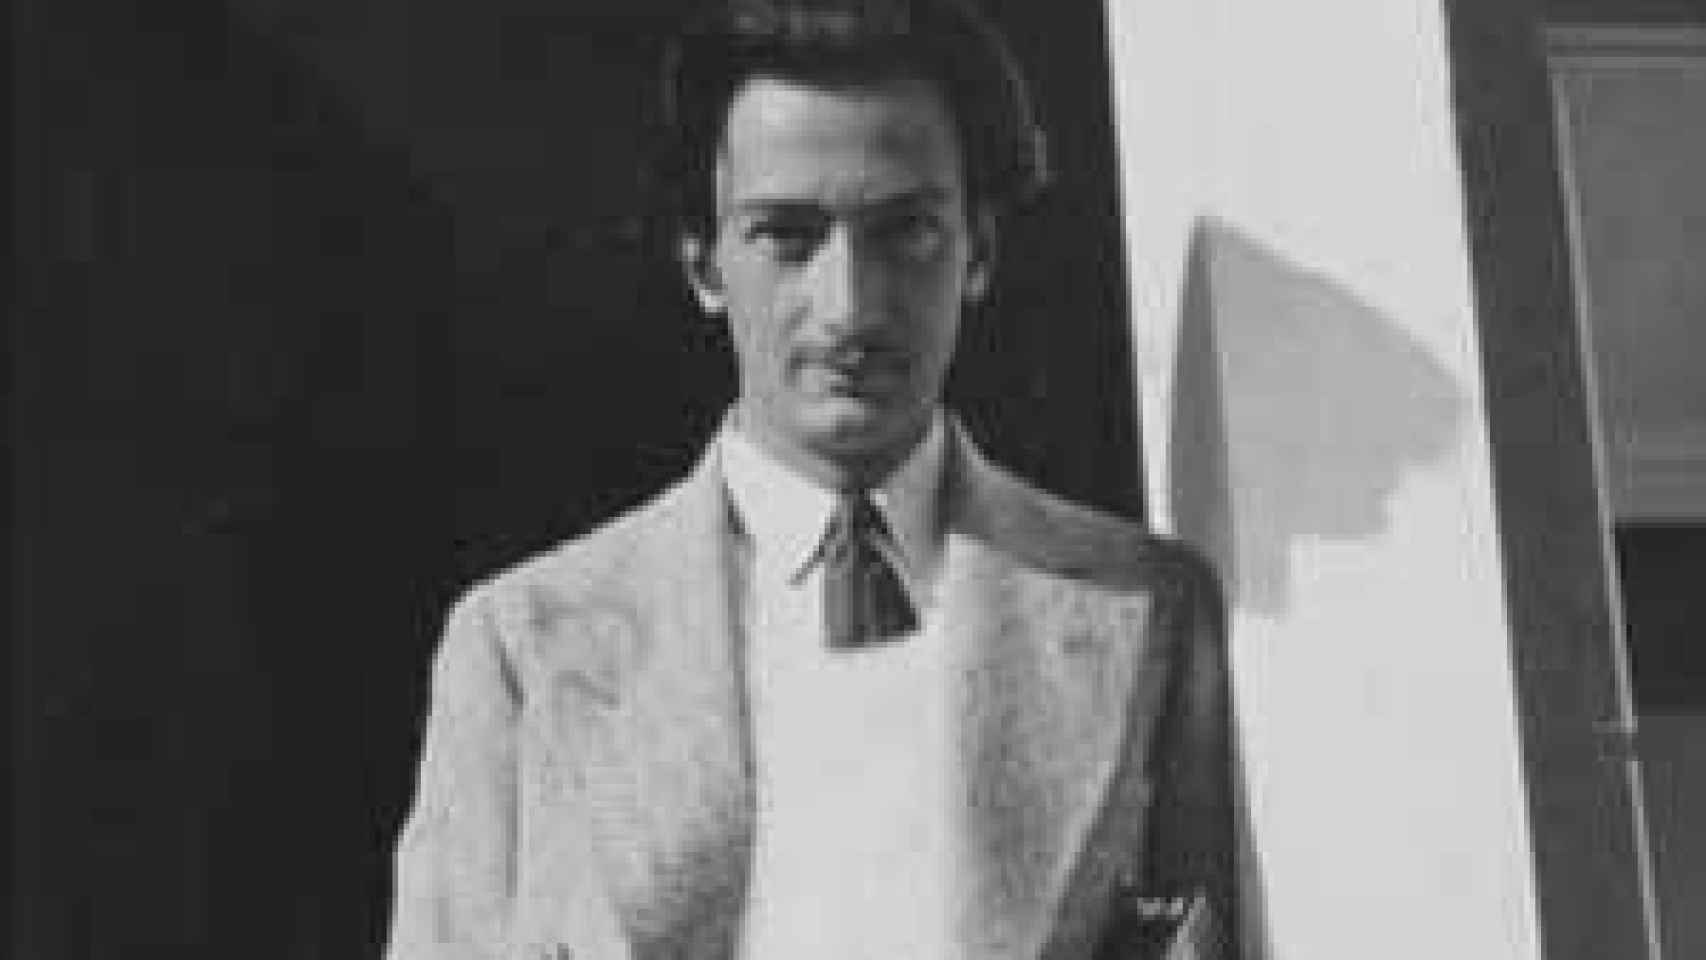 Image: Yo soy el surrealismo, 20 años de la muerte de Salvador Dalí